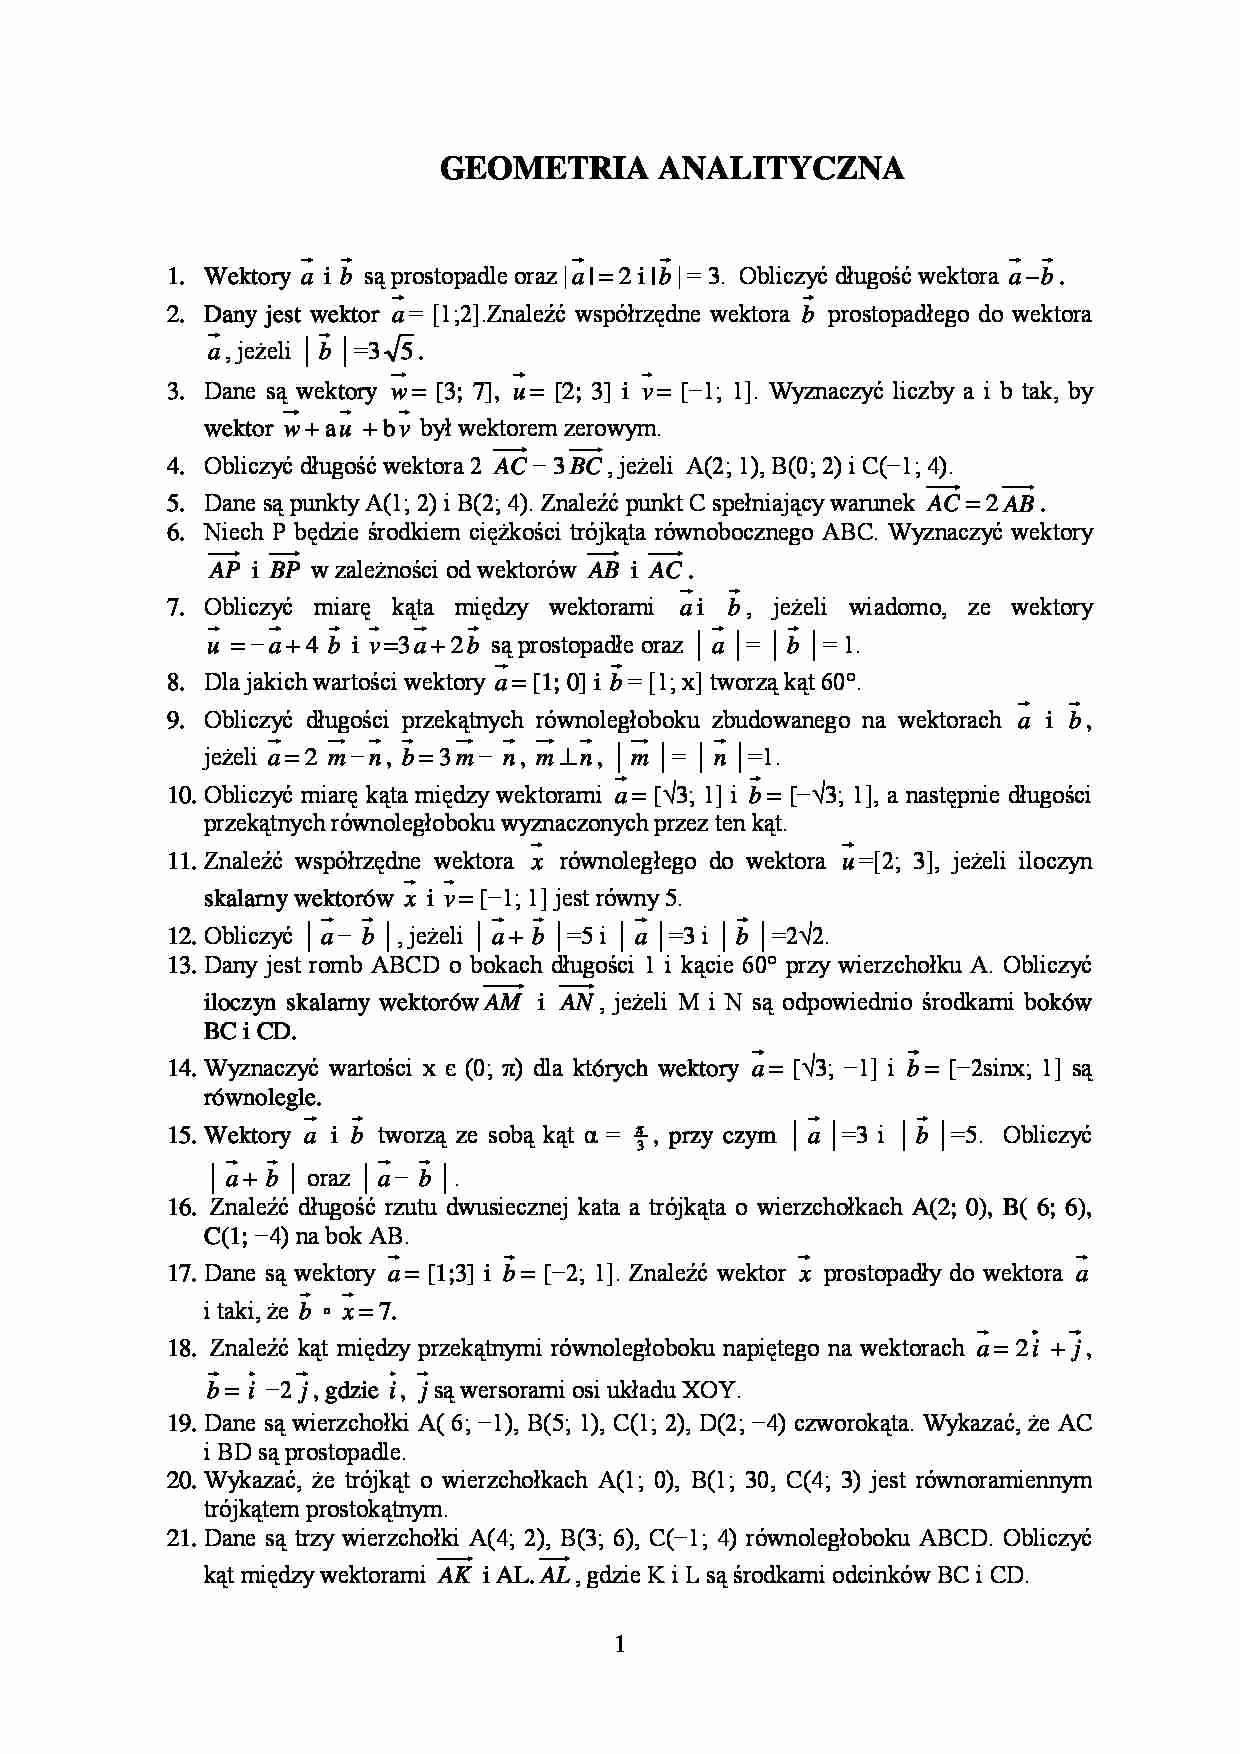 Geometria analityczna - zadania - strona 1